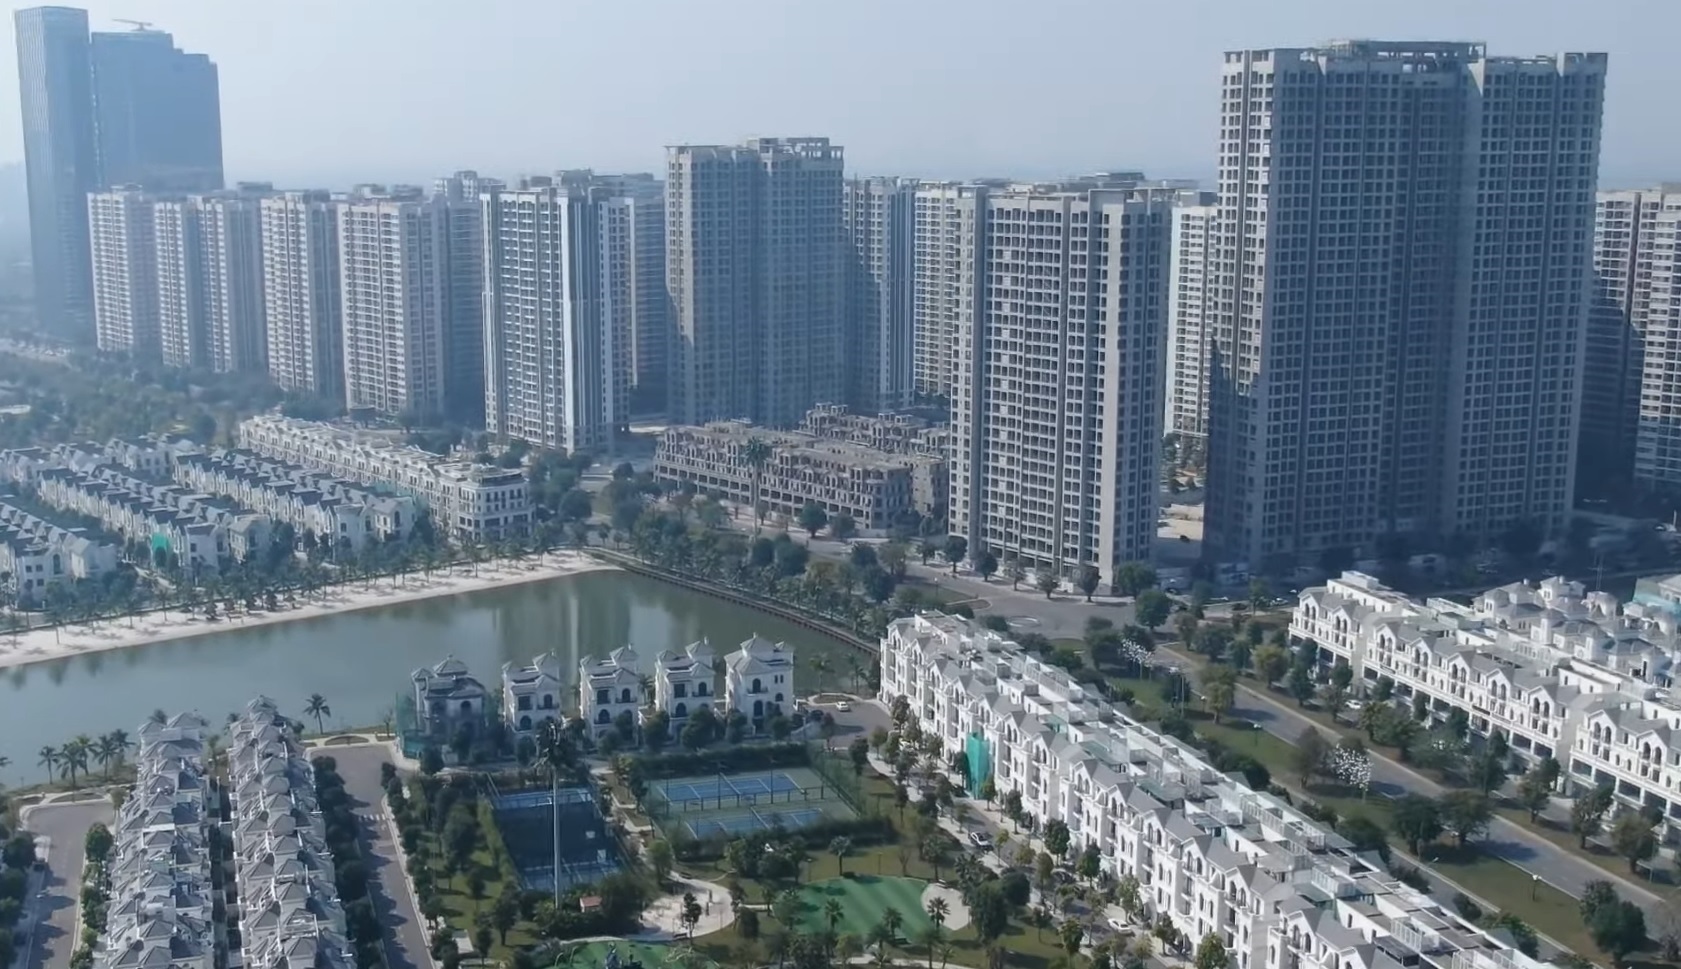 Hà Nội hoàn thiện hơn 700 căn hộ, tạo nguồn cung bất động sản trong quý I/2023 - Ảnh 1.